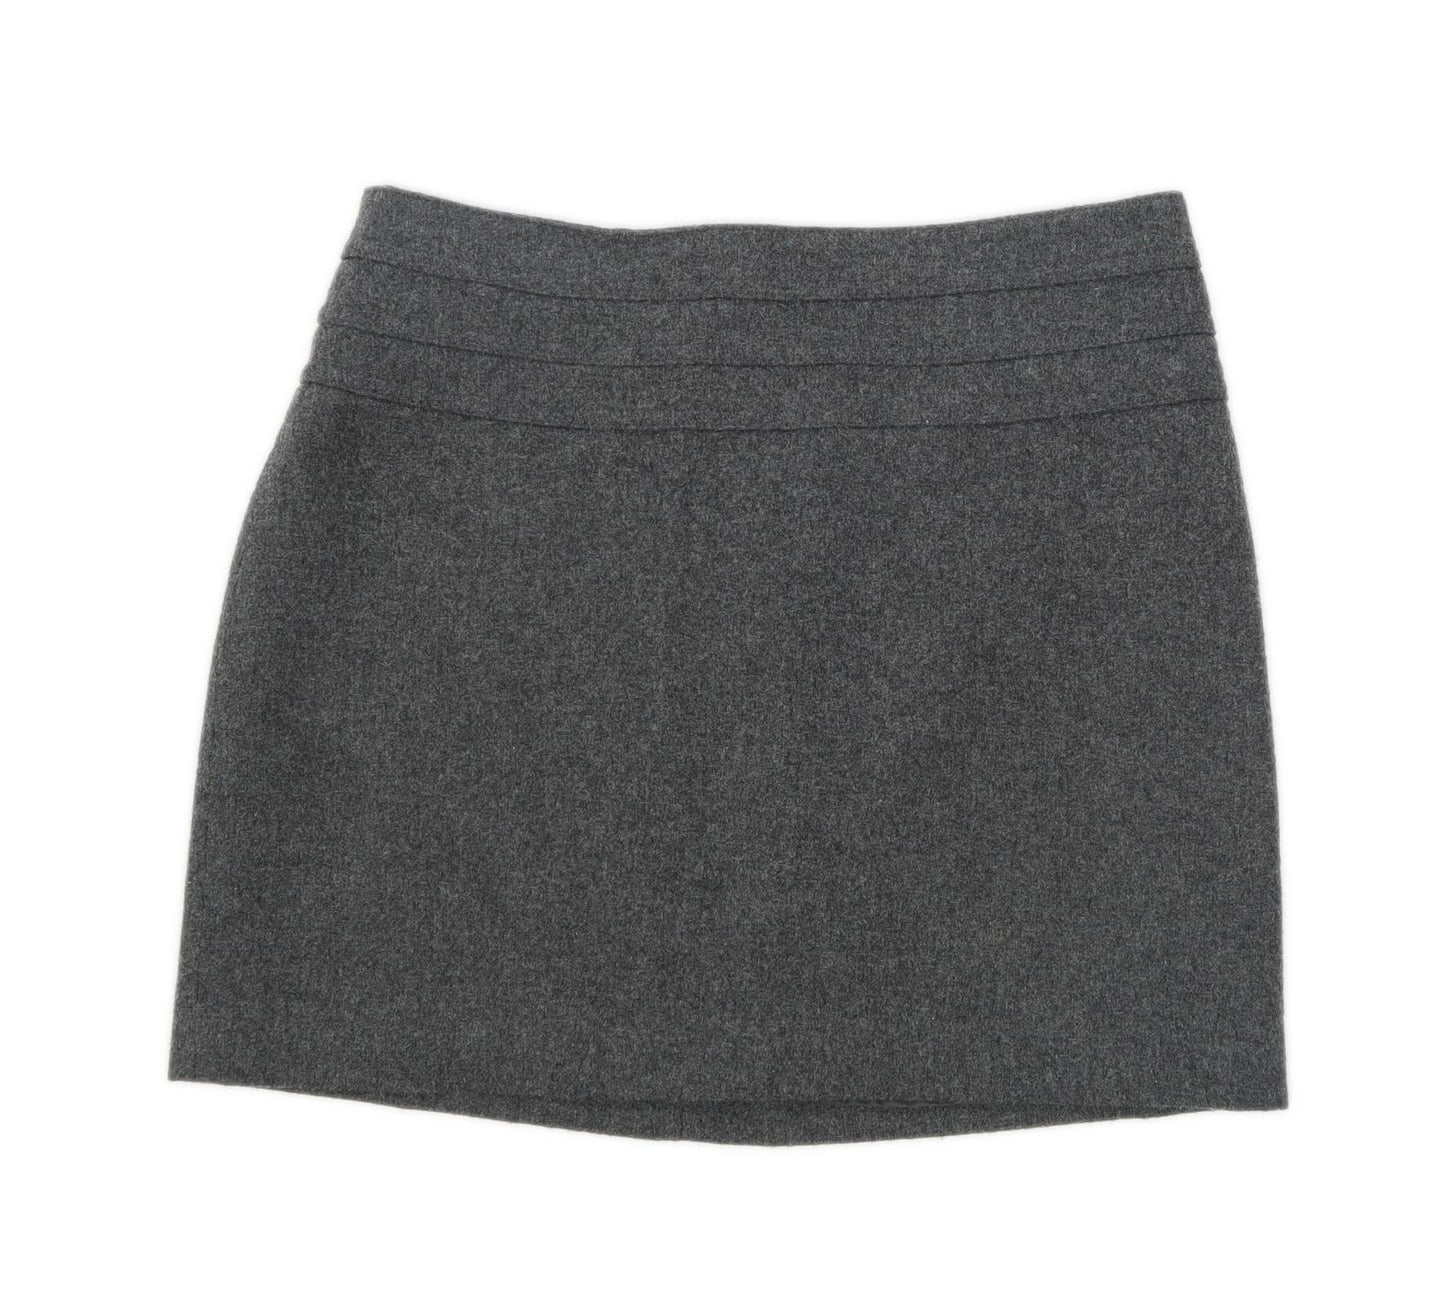 H&M Womens Size 8 Wool Blend Grey Skirt (Regular)